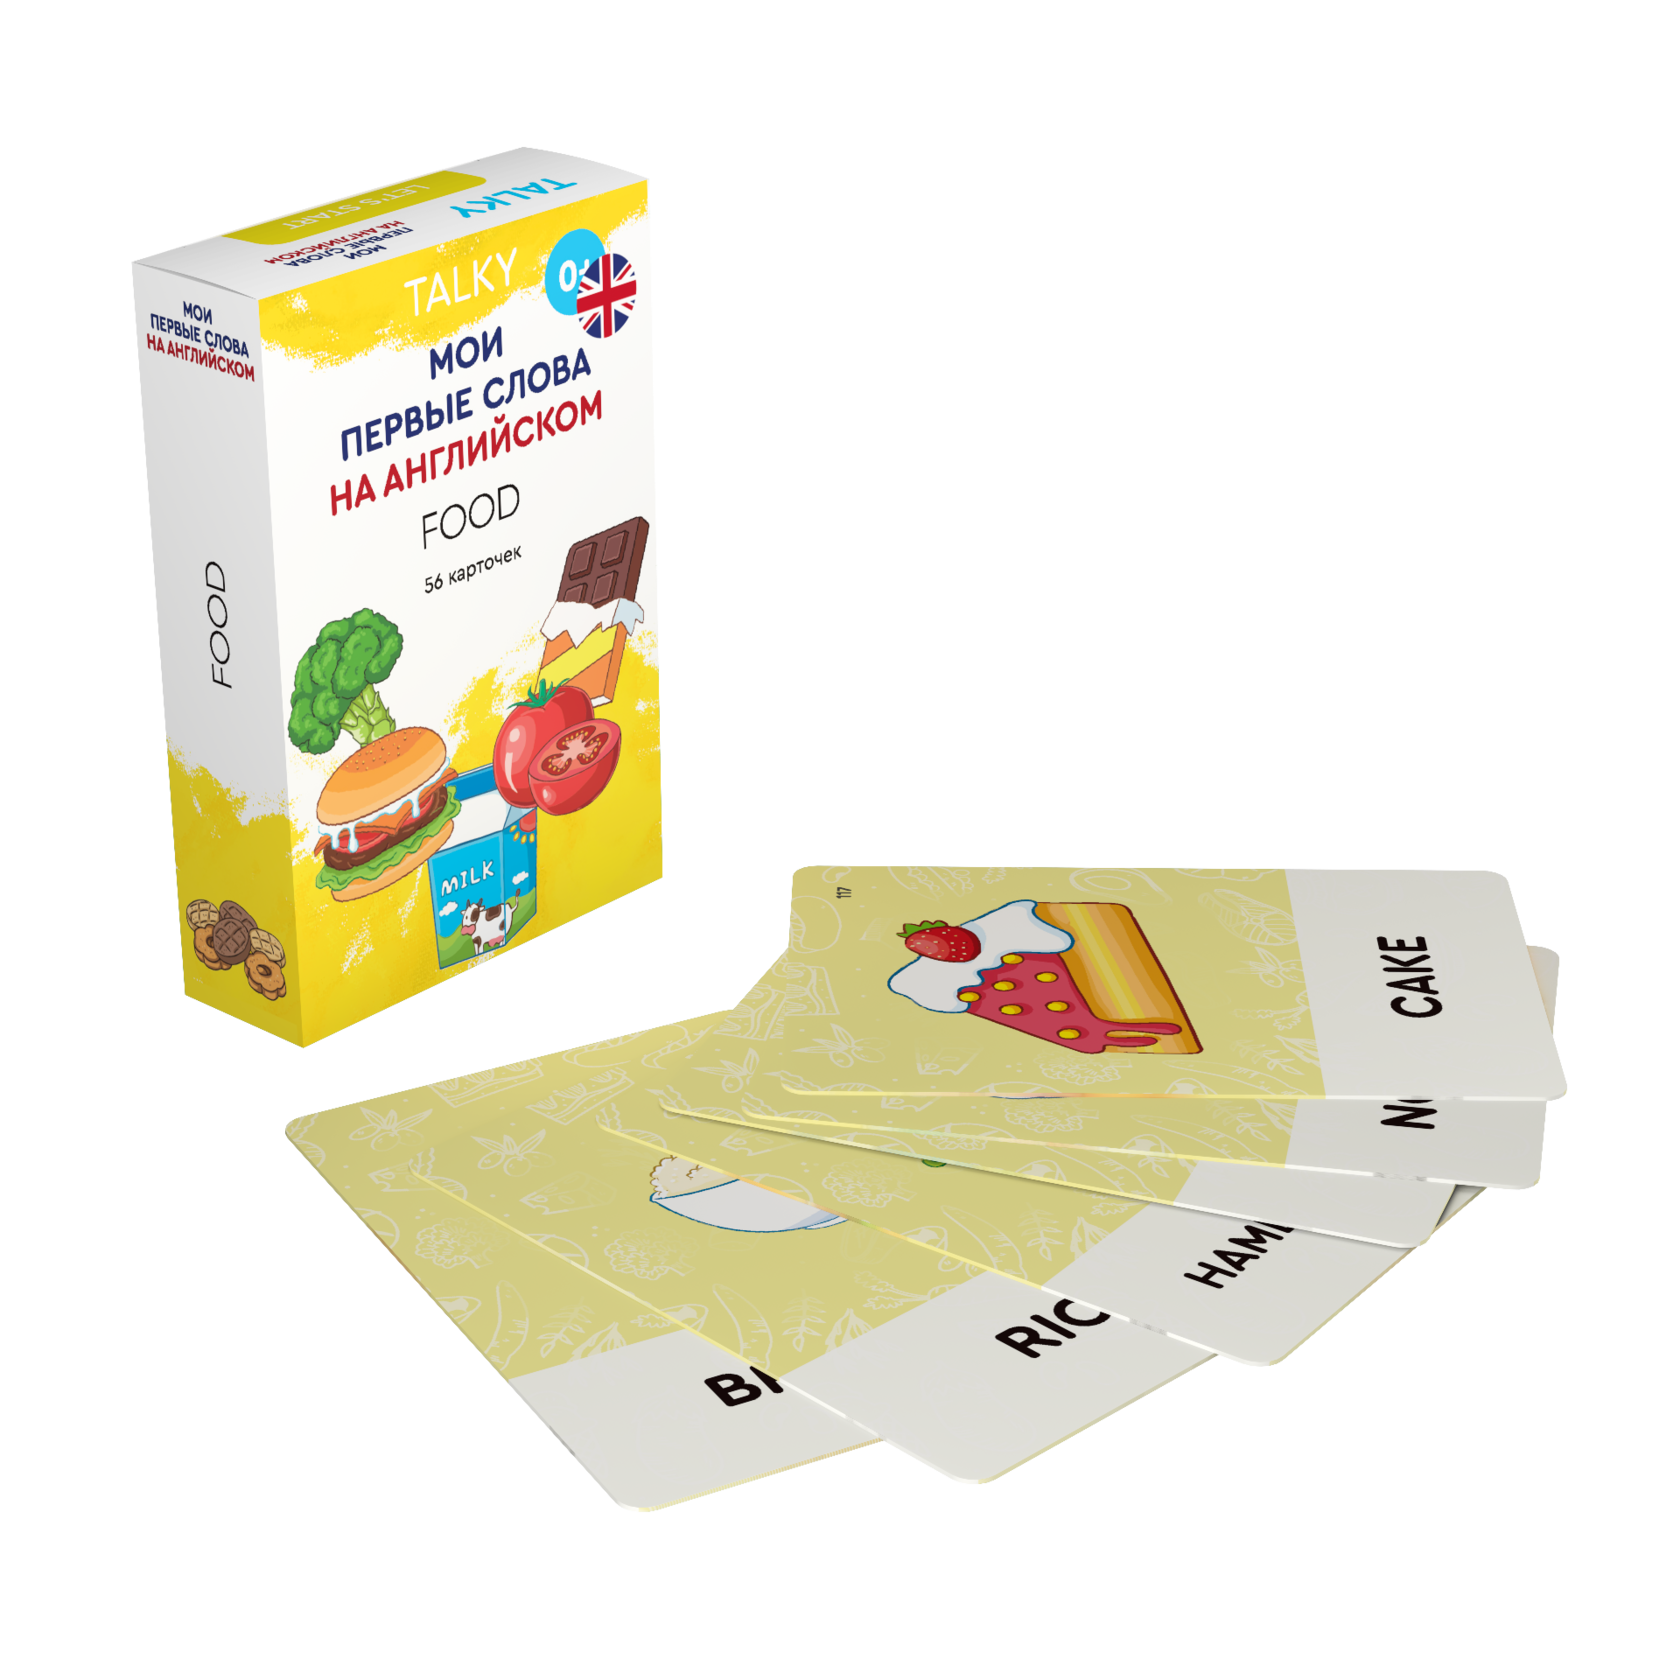 Развивающие карточки для детей LUMICUBE для TALKY, на англ. языке, еда, 56шт. KDTKE02-FOOD lumicube умные карточки talky на английском языке family professions color